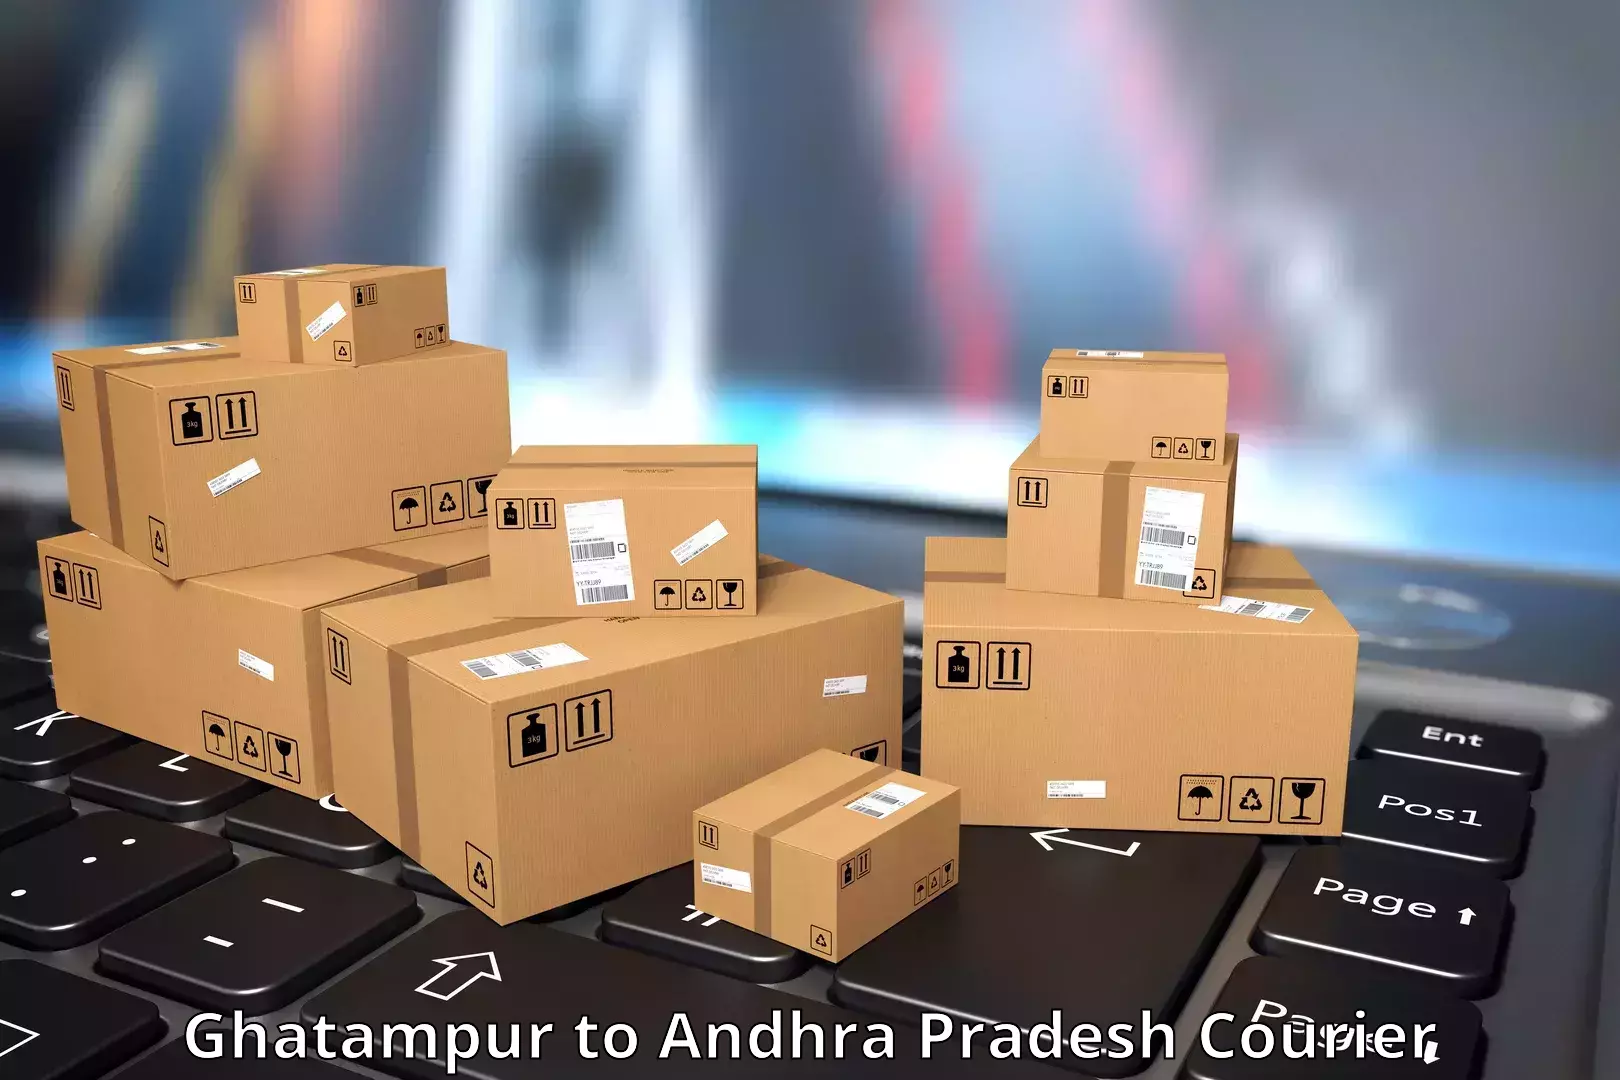 International parcel service Ghatampur to Malikipuram